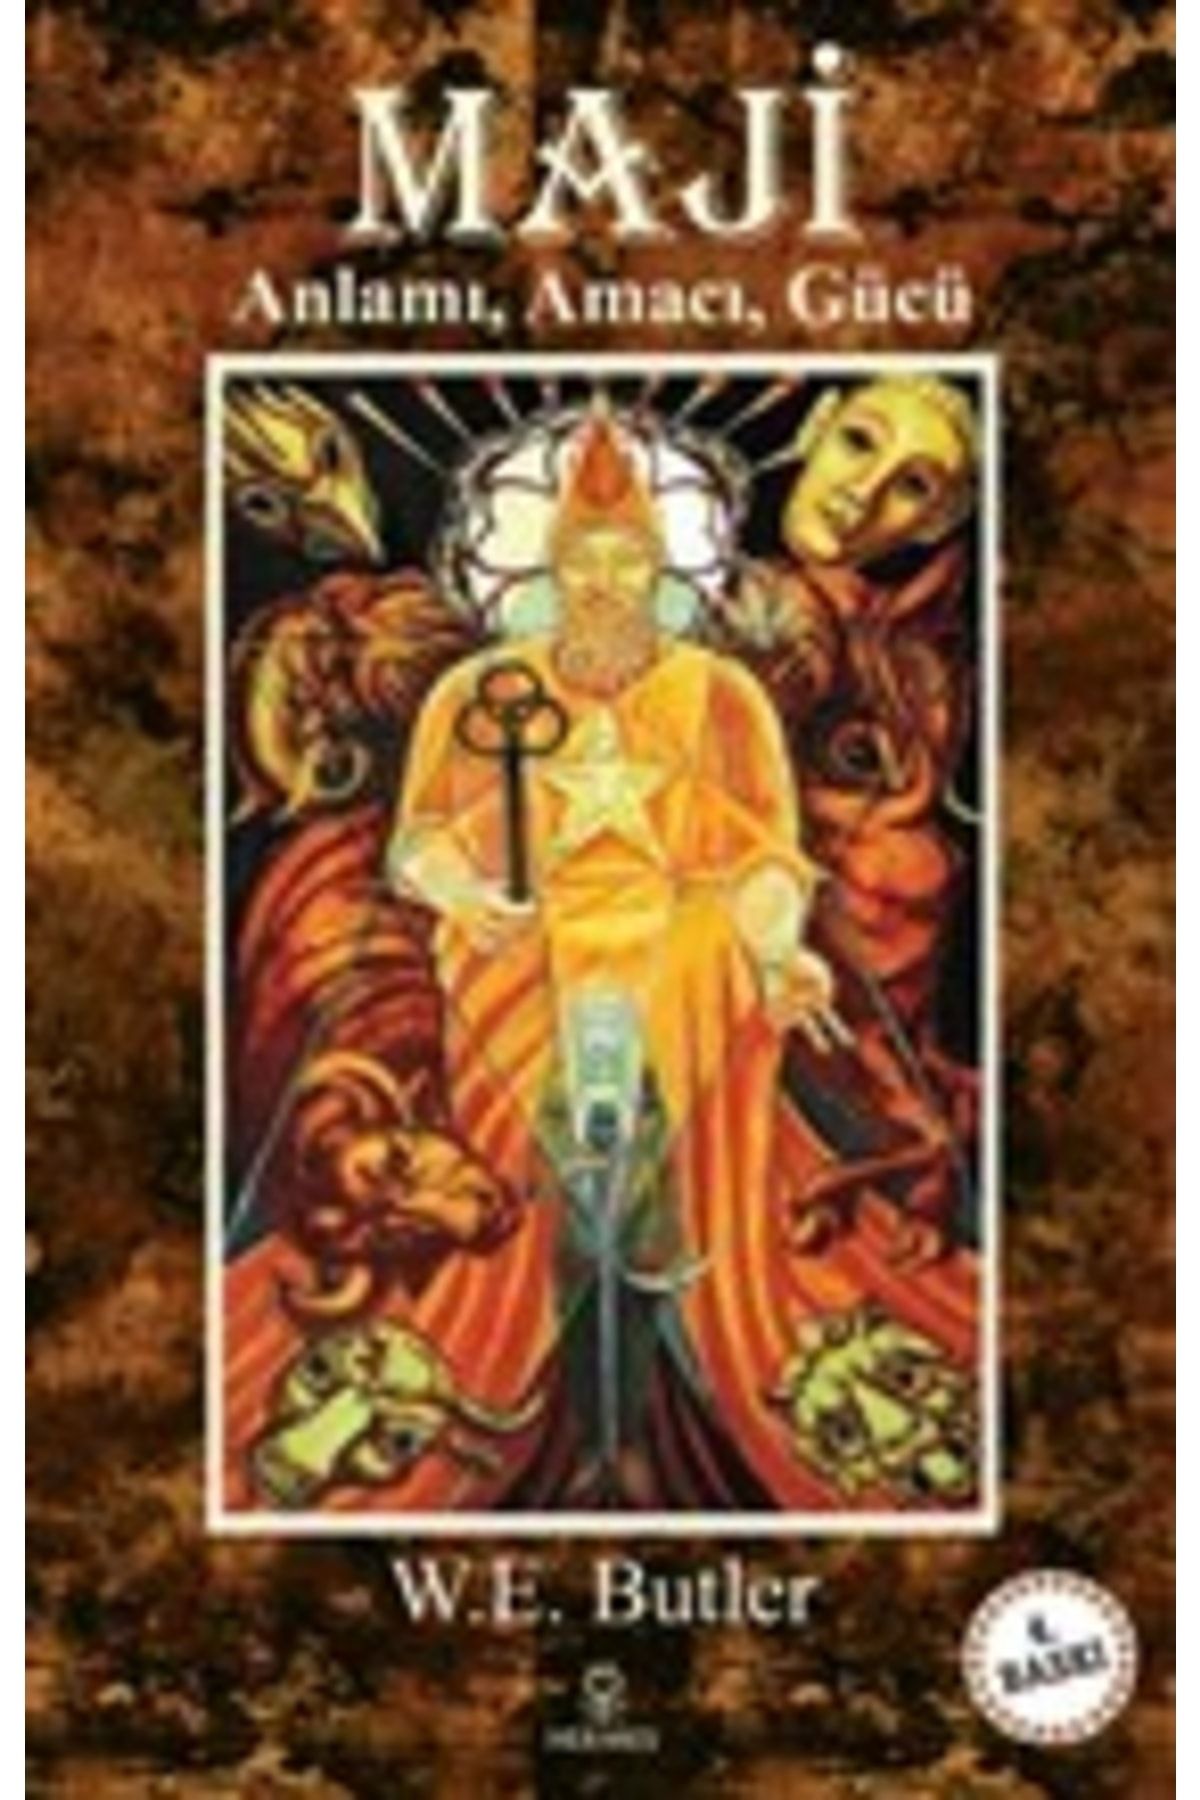 Hermes Yayınları Maji - Anlamı, Amacı, Gücü / W. E. Butler / Hermes Yayınları / 9786057255075